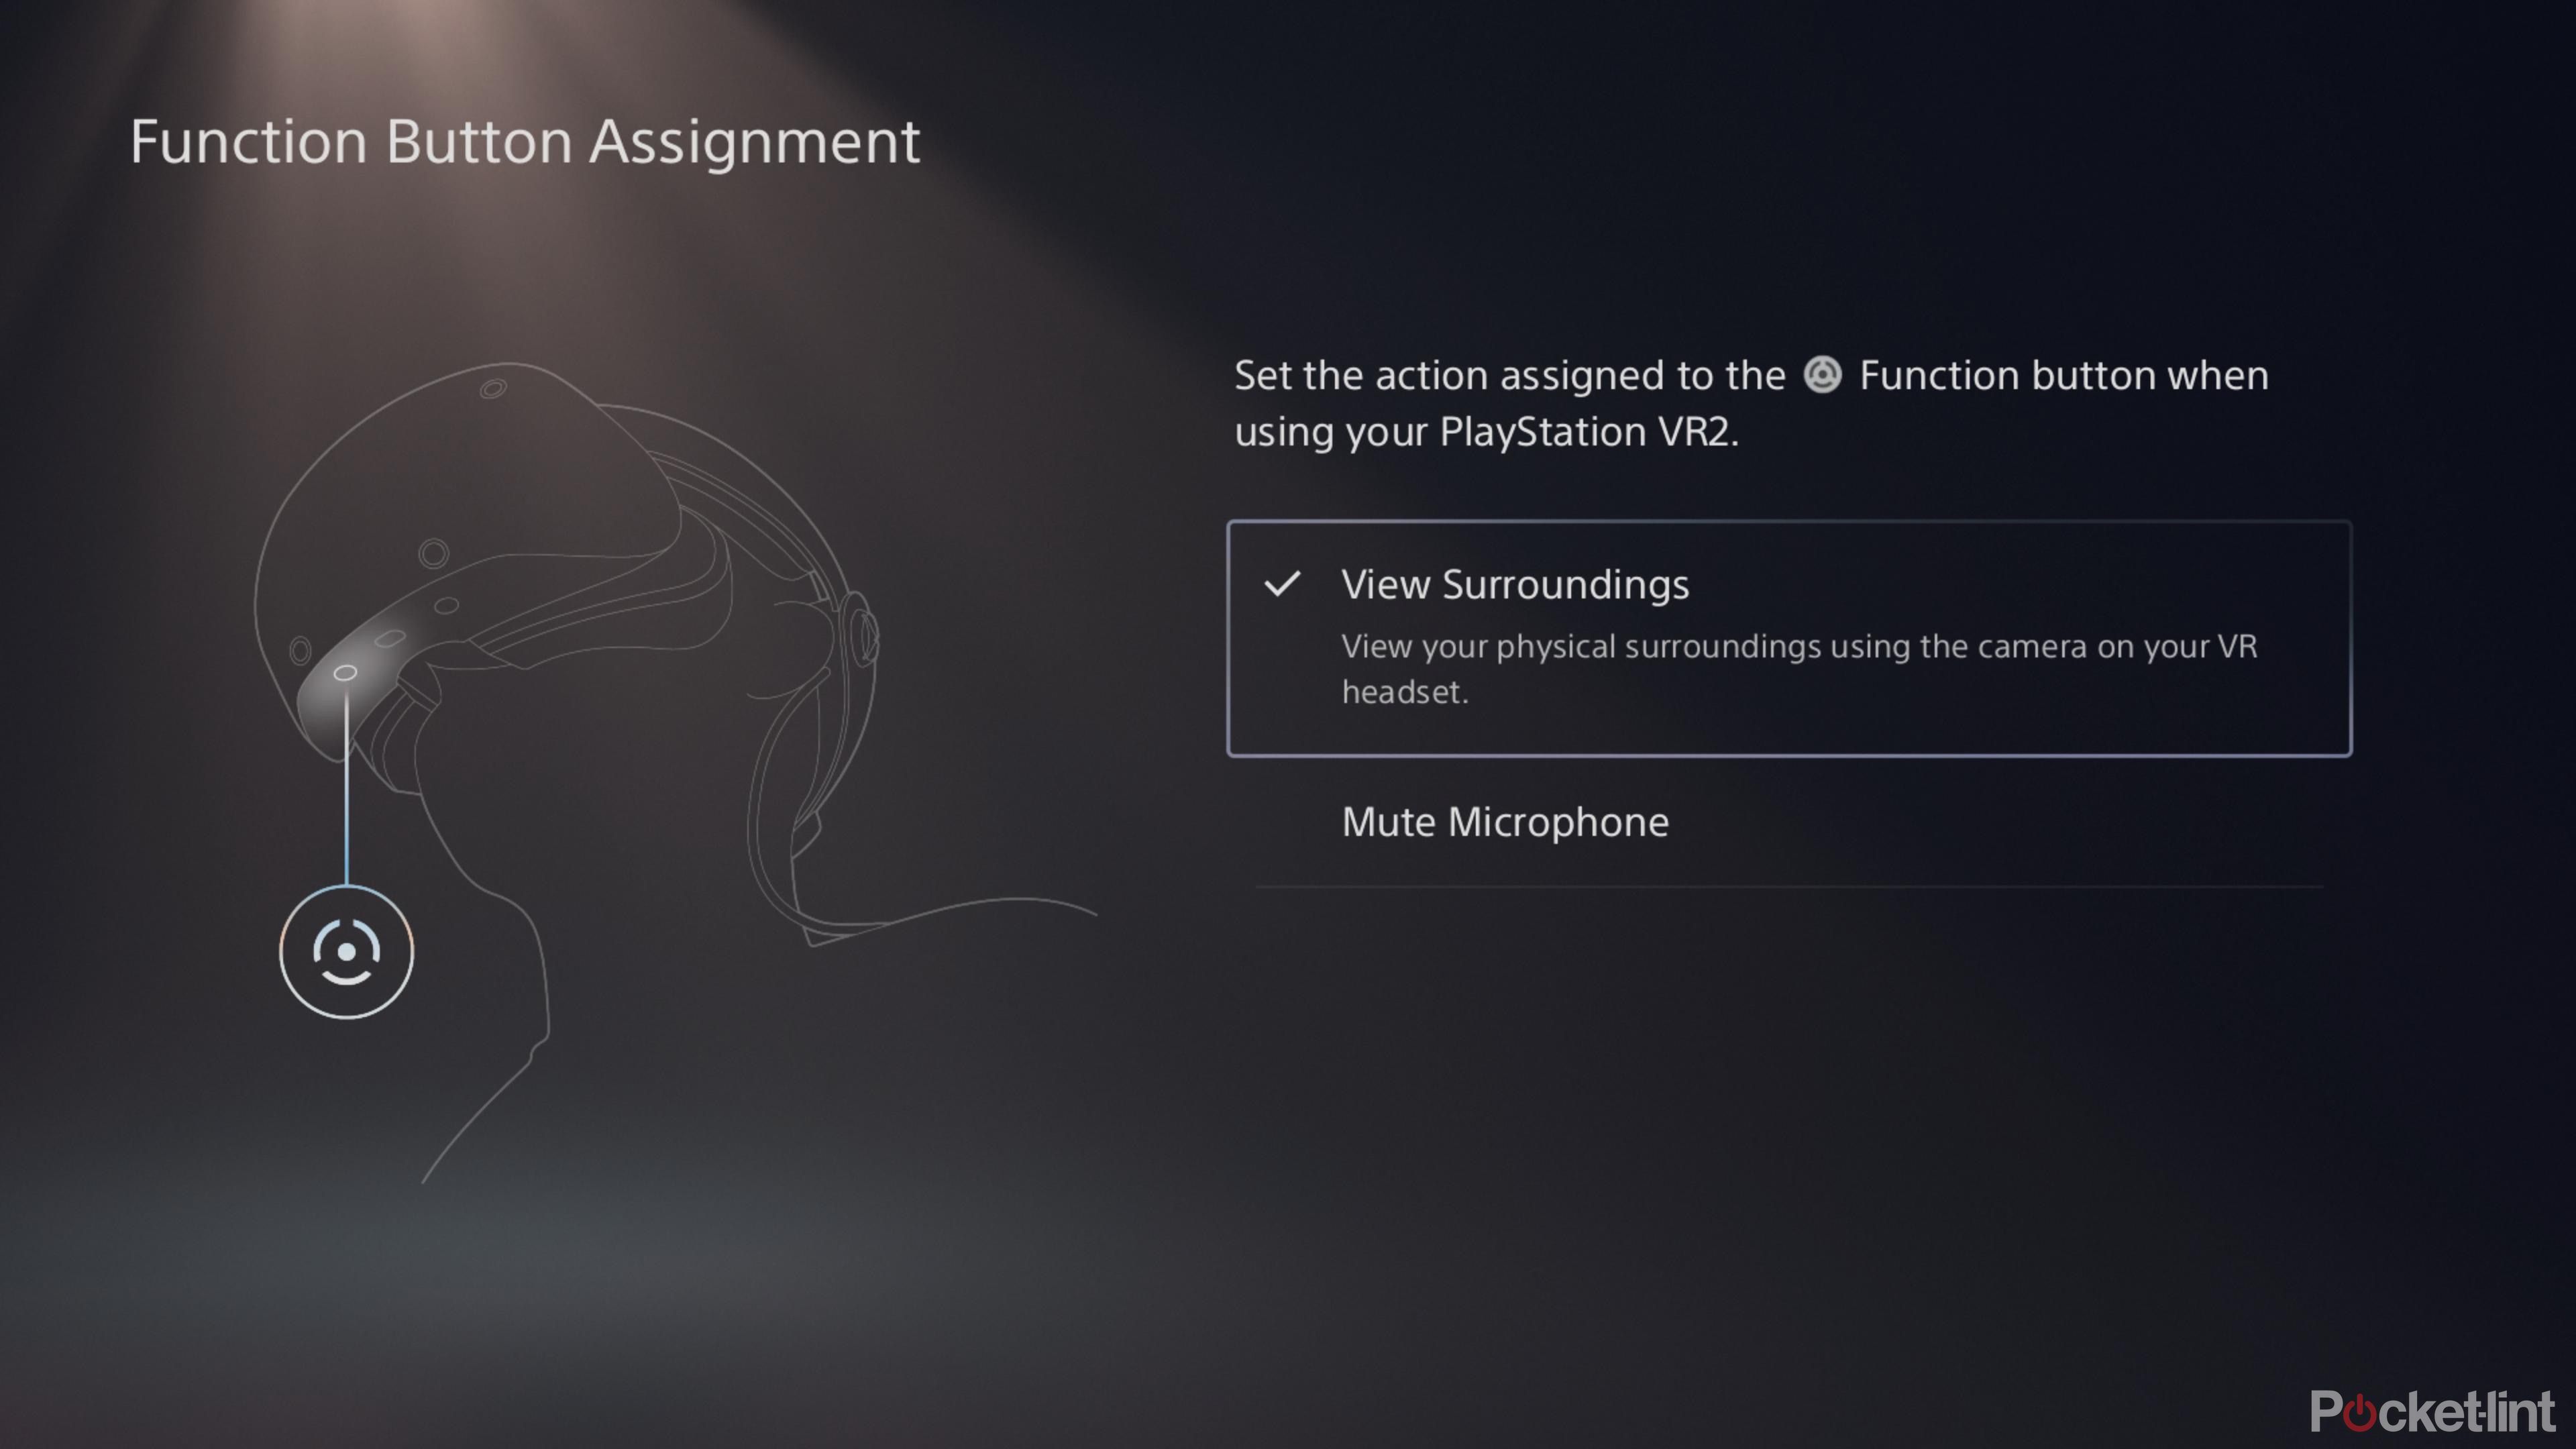 SONY PlayStation VR2 - Seguimiento de ojos - Sonido 3D